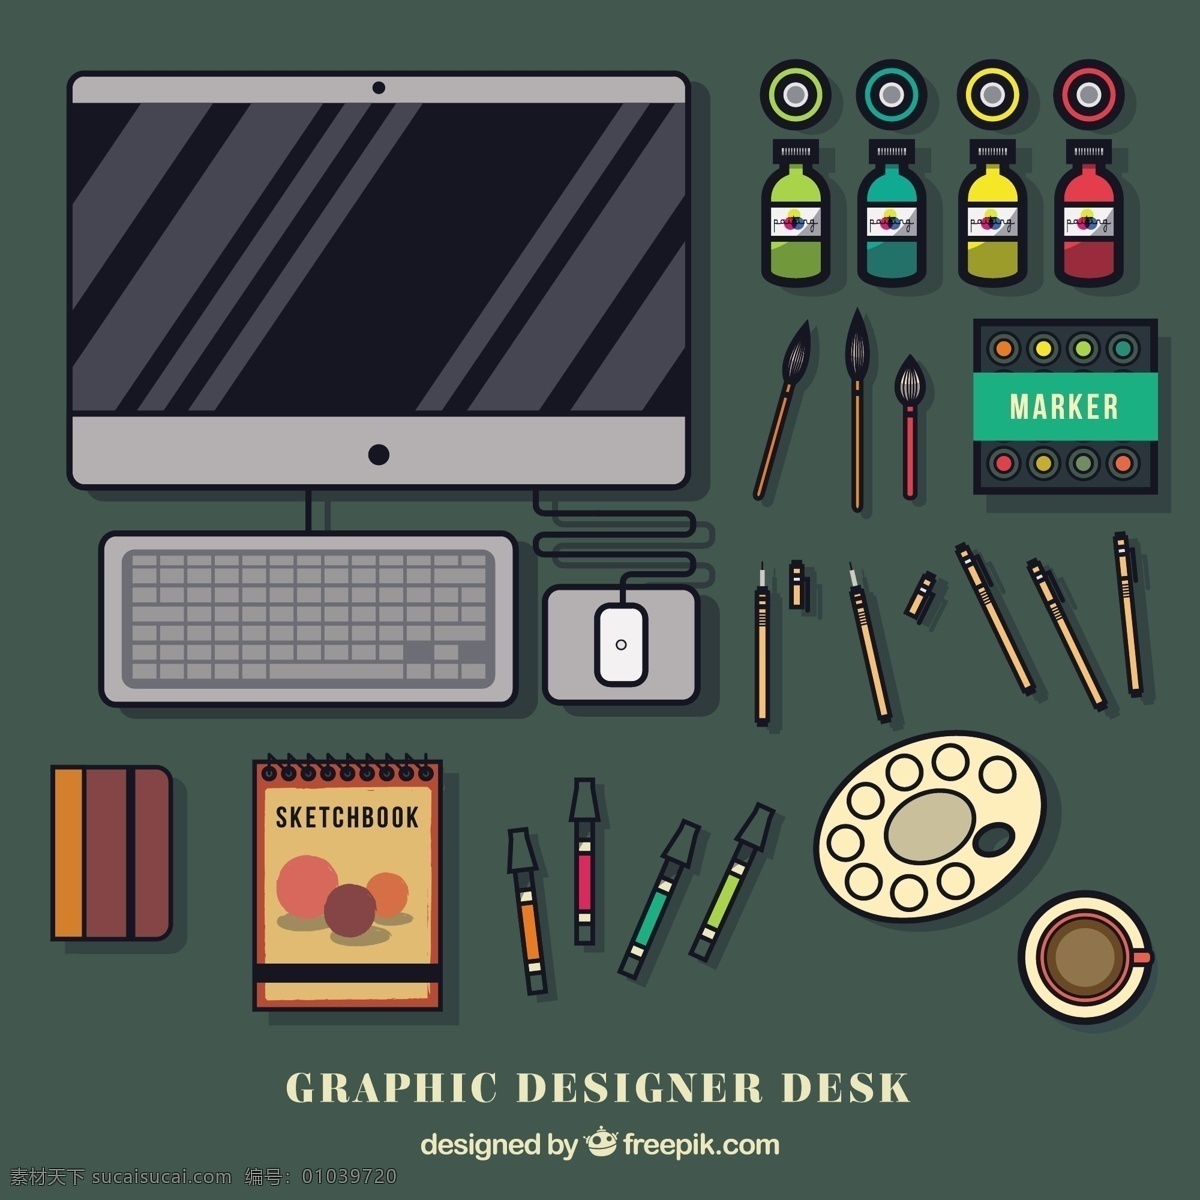 各种 平面设计 工具 电脑 平面 书桌 设计师 桌面 平面设计师 工作空间 工作场所 品种 灰色